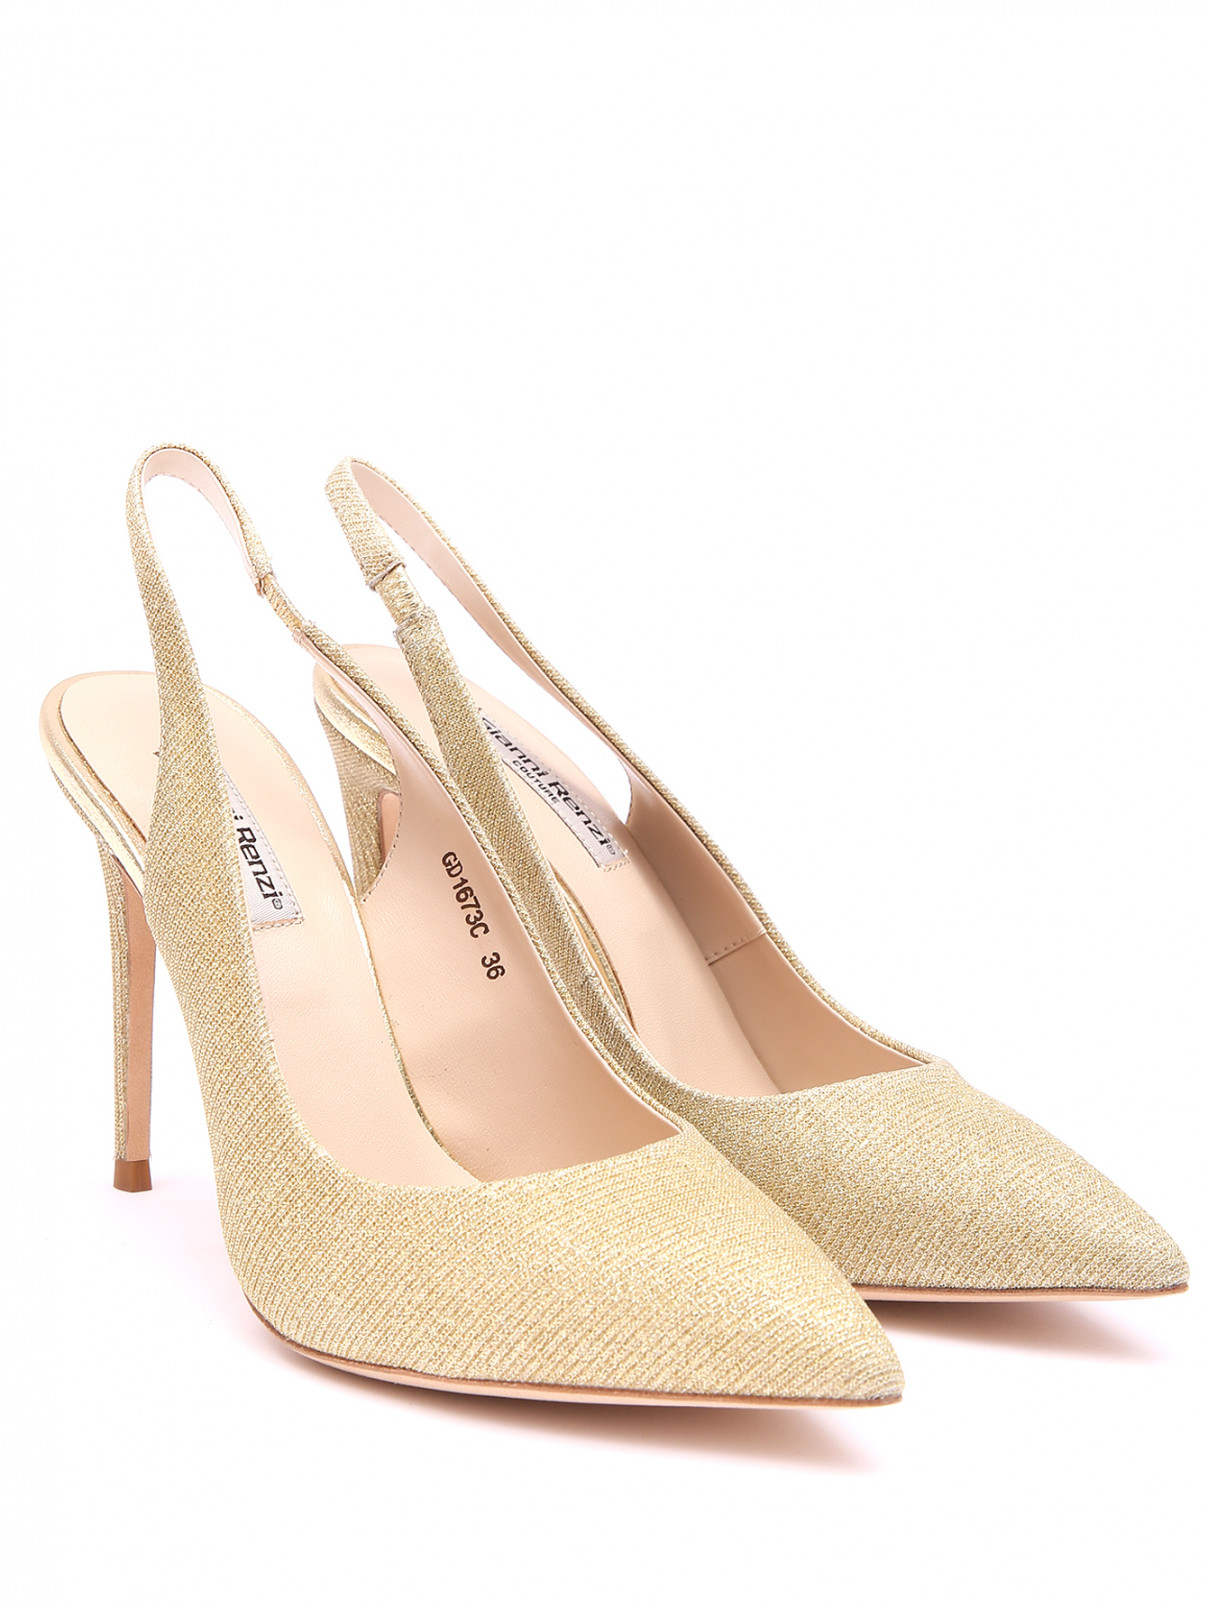 Туфли из текстиля с открытой пяткой Gianni Renzi Couture  –  Общий вид  – Цвет:  Золотой